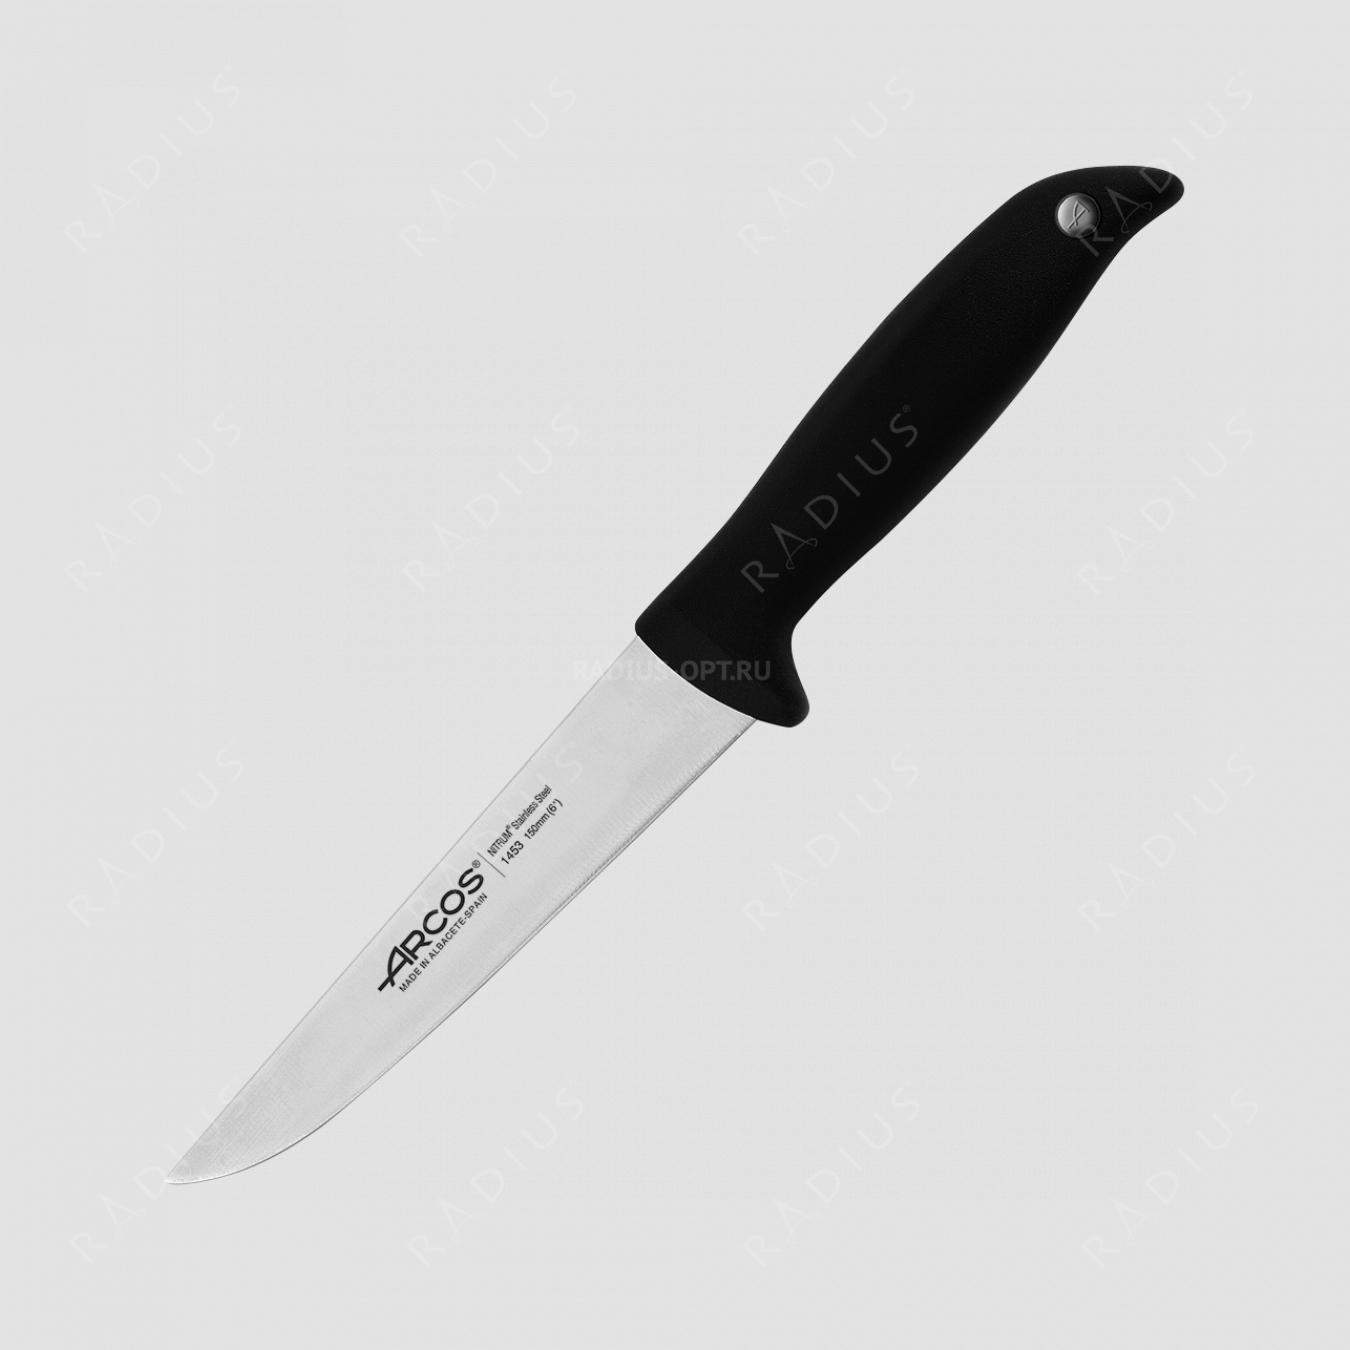 Нож кухонный 15 см, серия Menorca, ARCOS, Испания